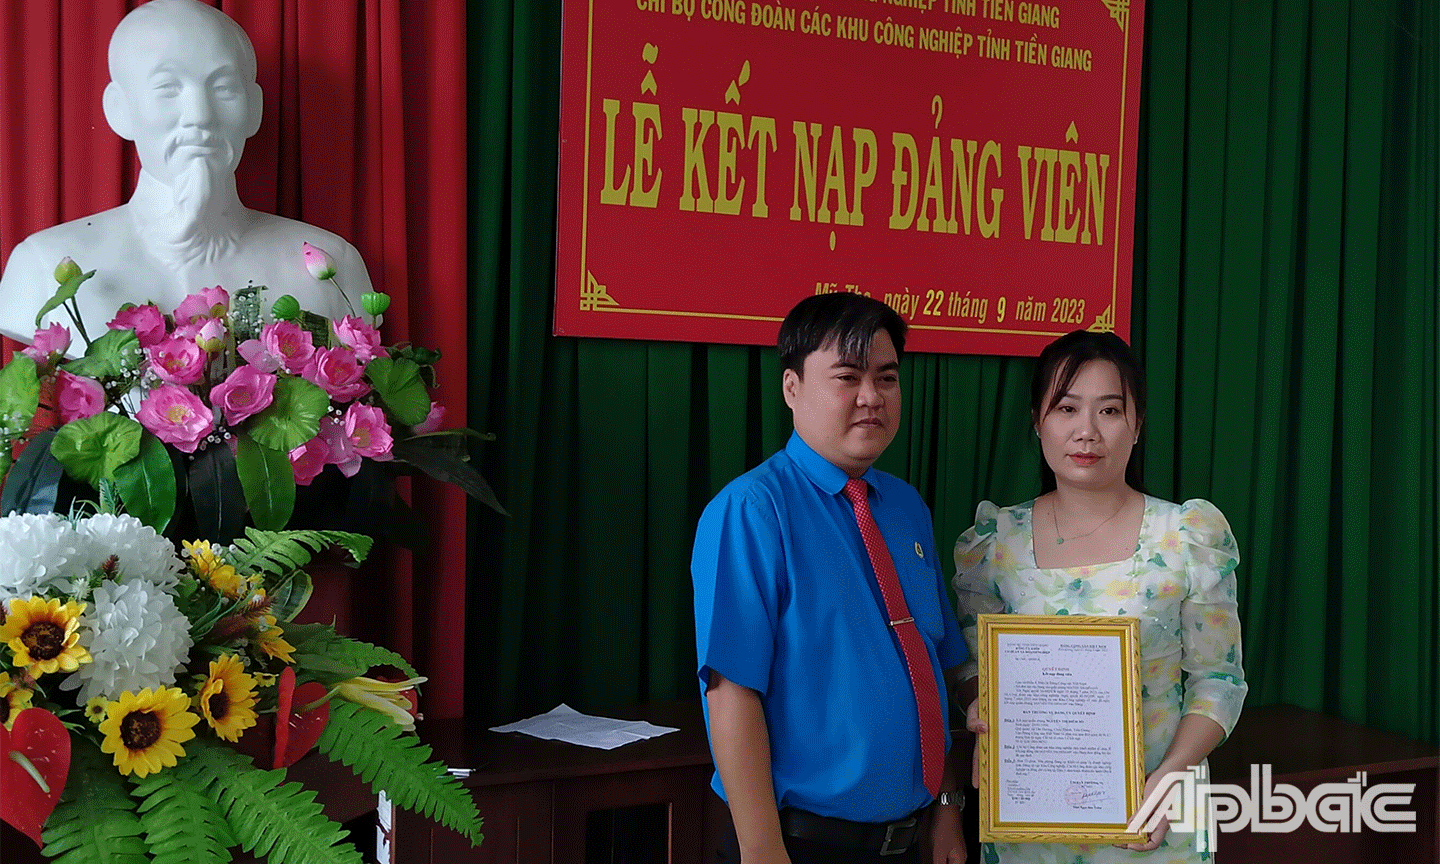 Đảng ủy Các khu công nghiệp tỉnh Tiền Giang kết nạp 3 đảng viên mới